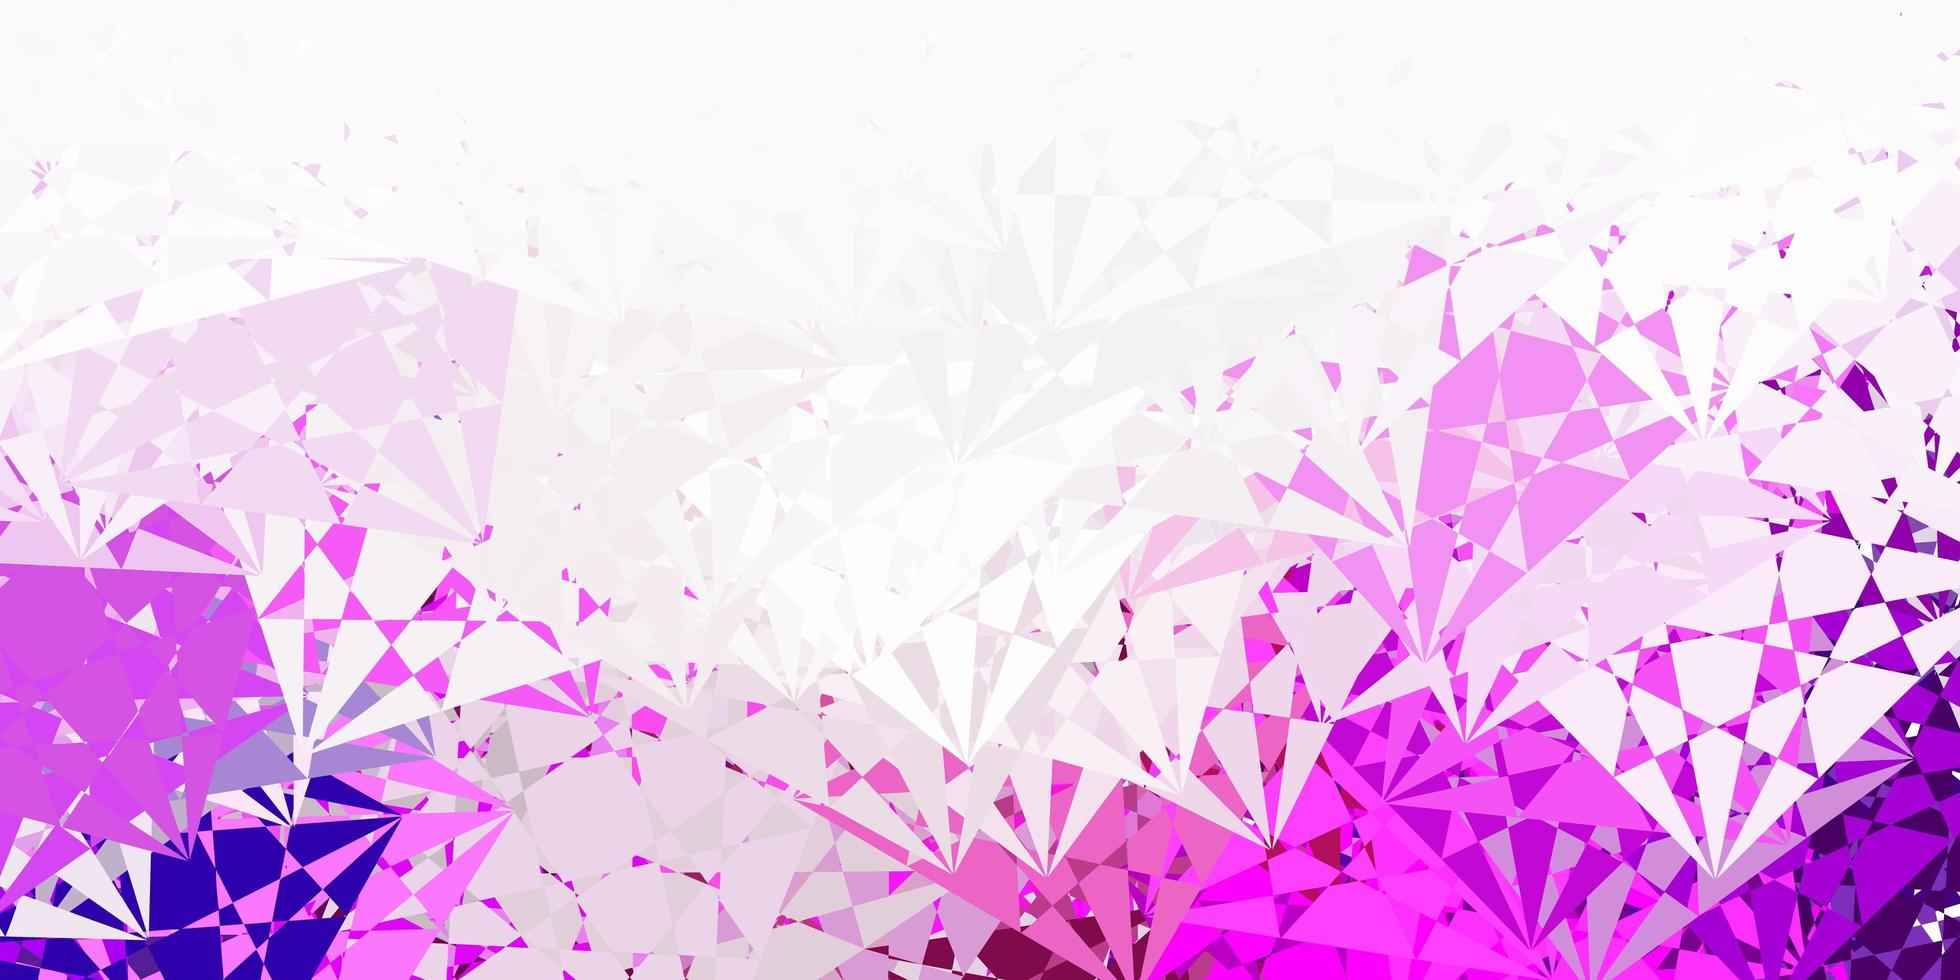 modèle vectoriel rose violet clair avec des formes triangulaires